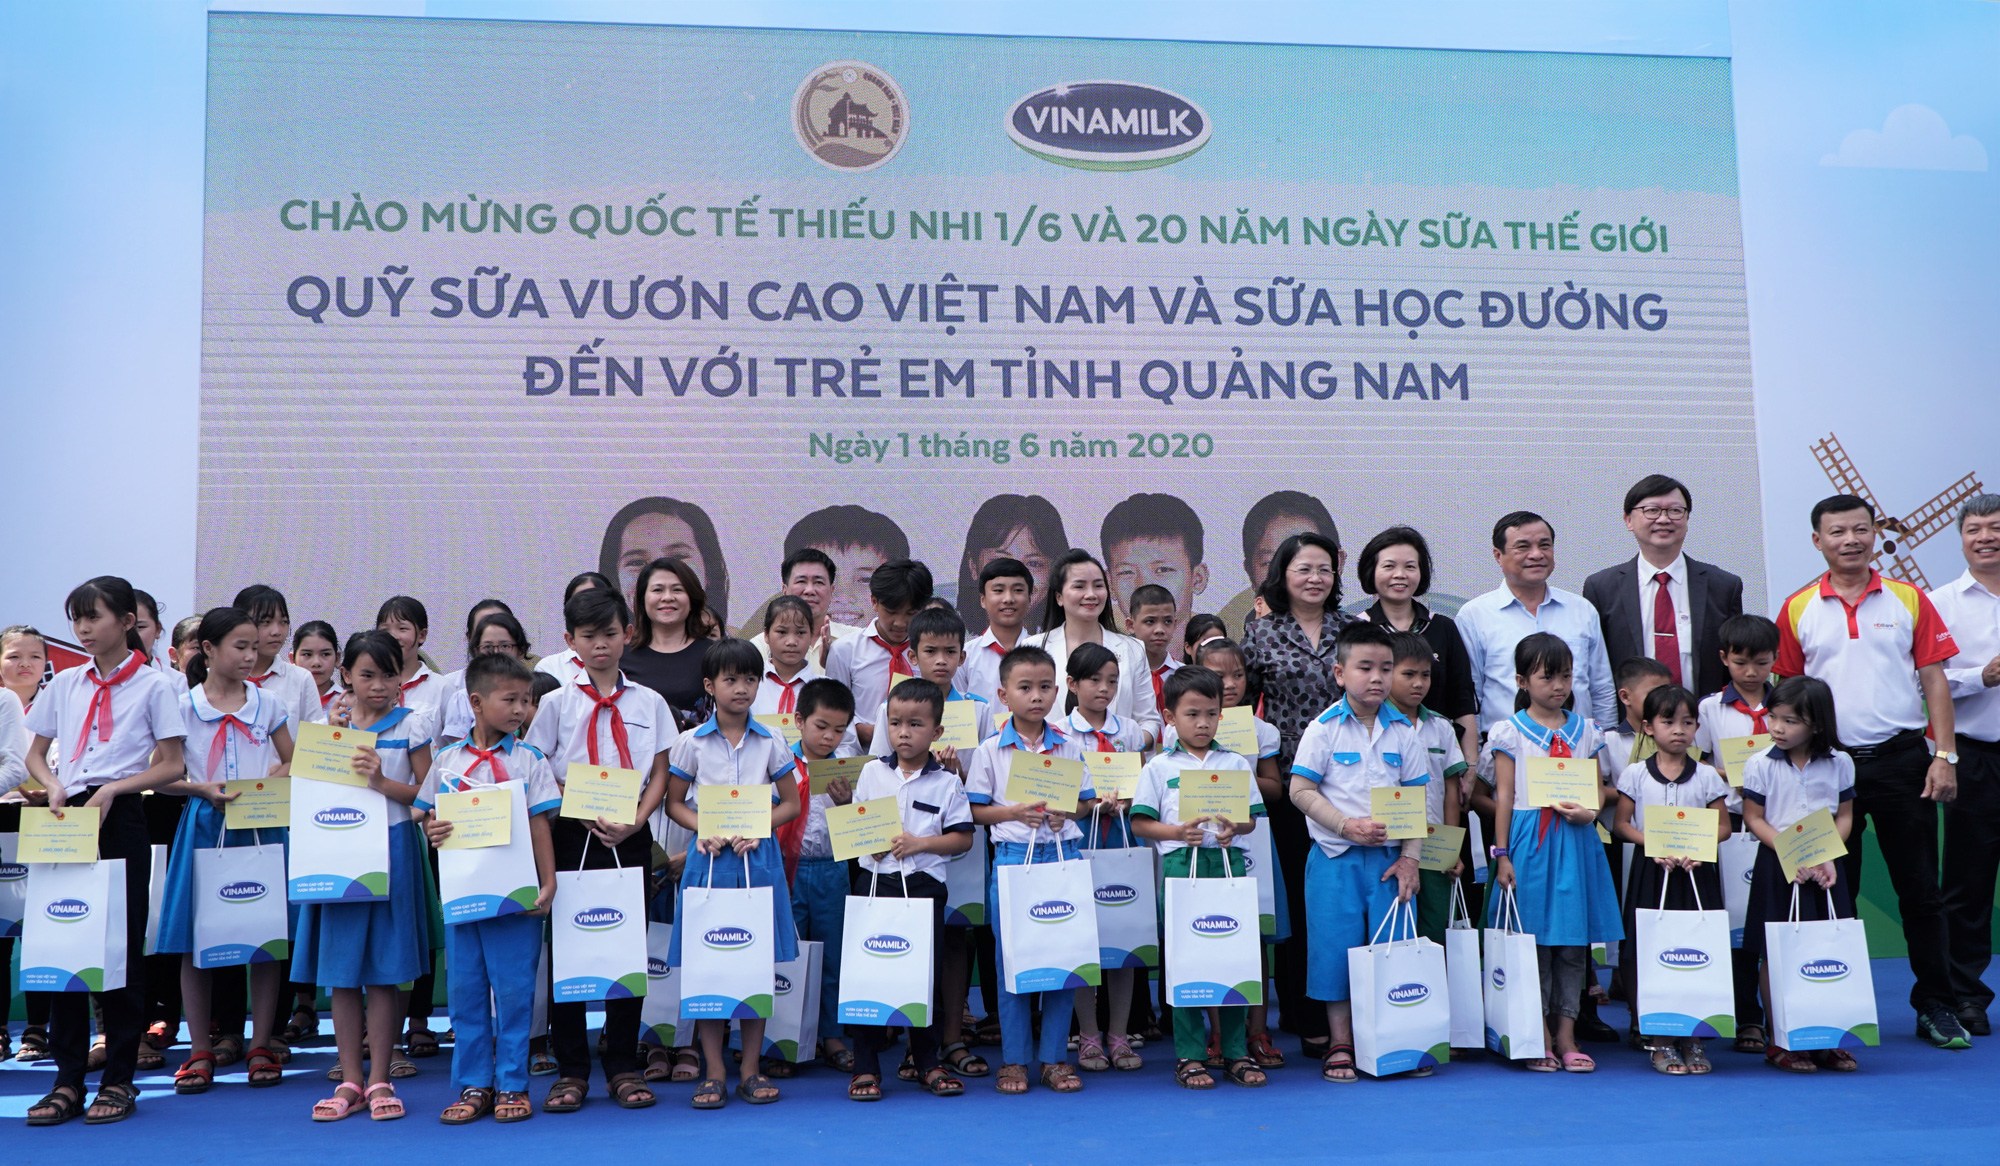 Hành trình xuyên mùa dịch của Quỹ sữa Vươn cao Việt Nam - Ảnh 5.